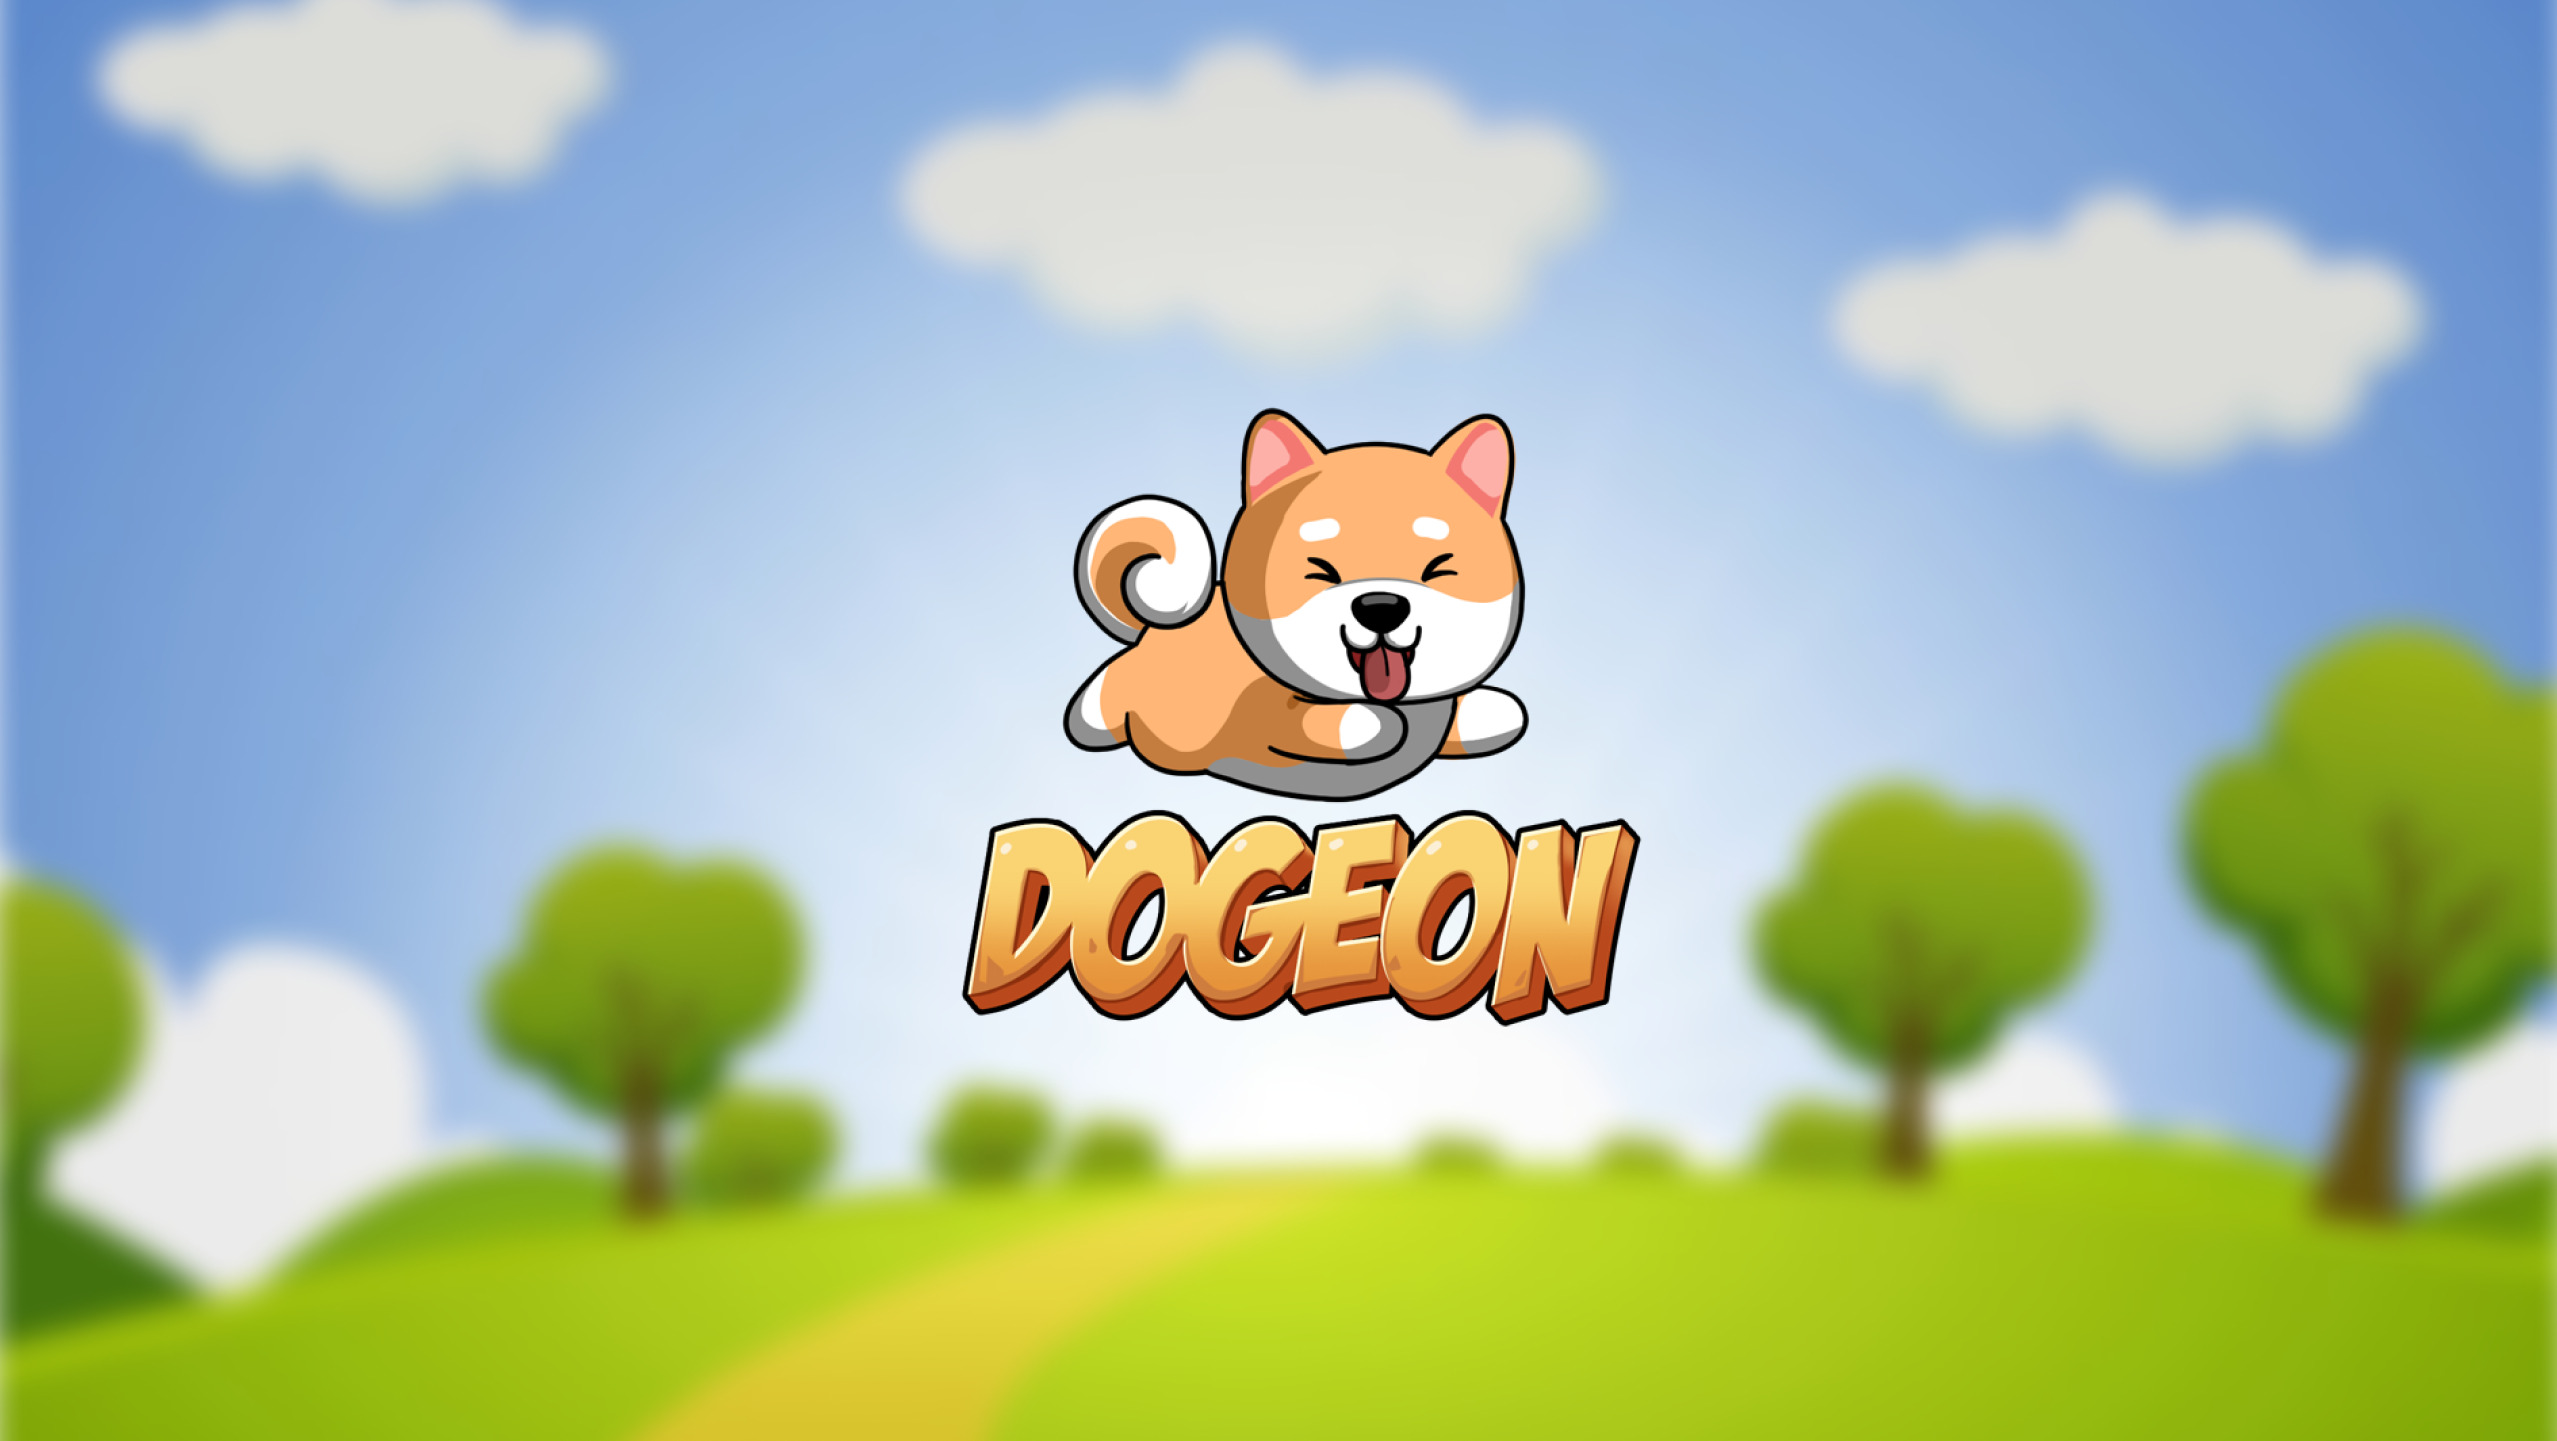 Dogeon là trò chơi Play-to-Earn kết hợp công nghệ NFT